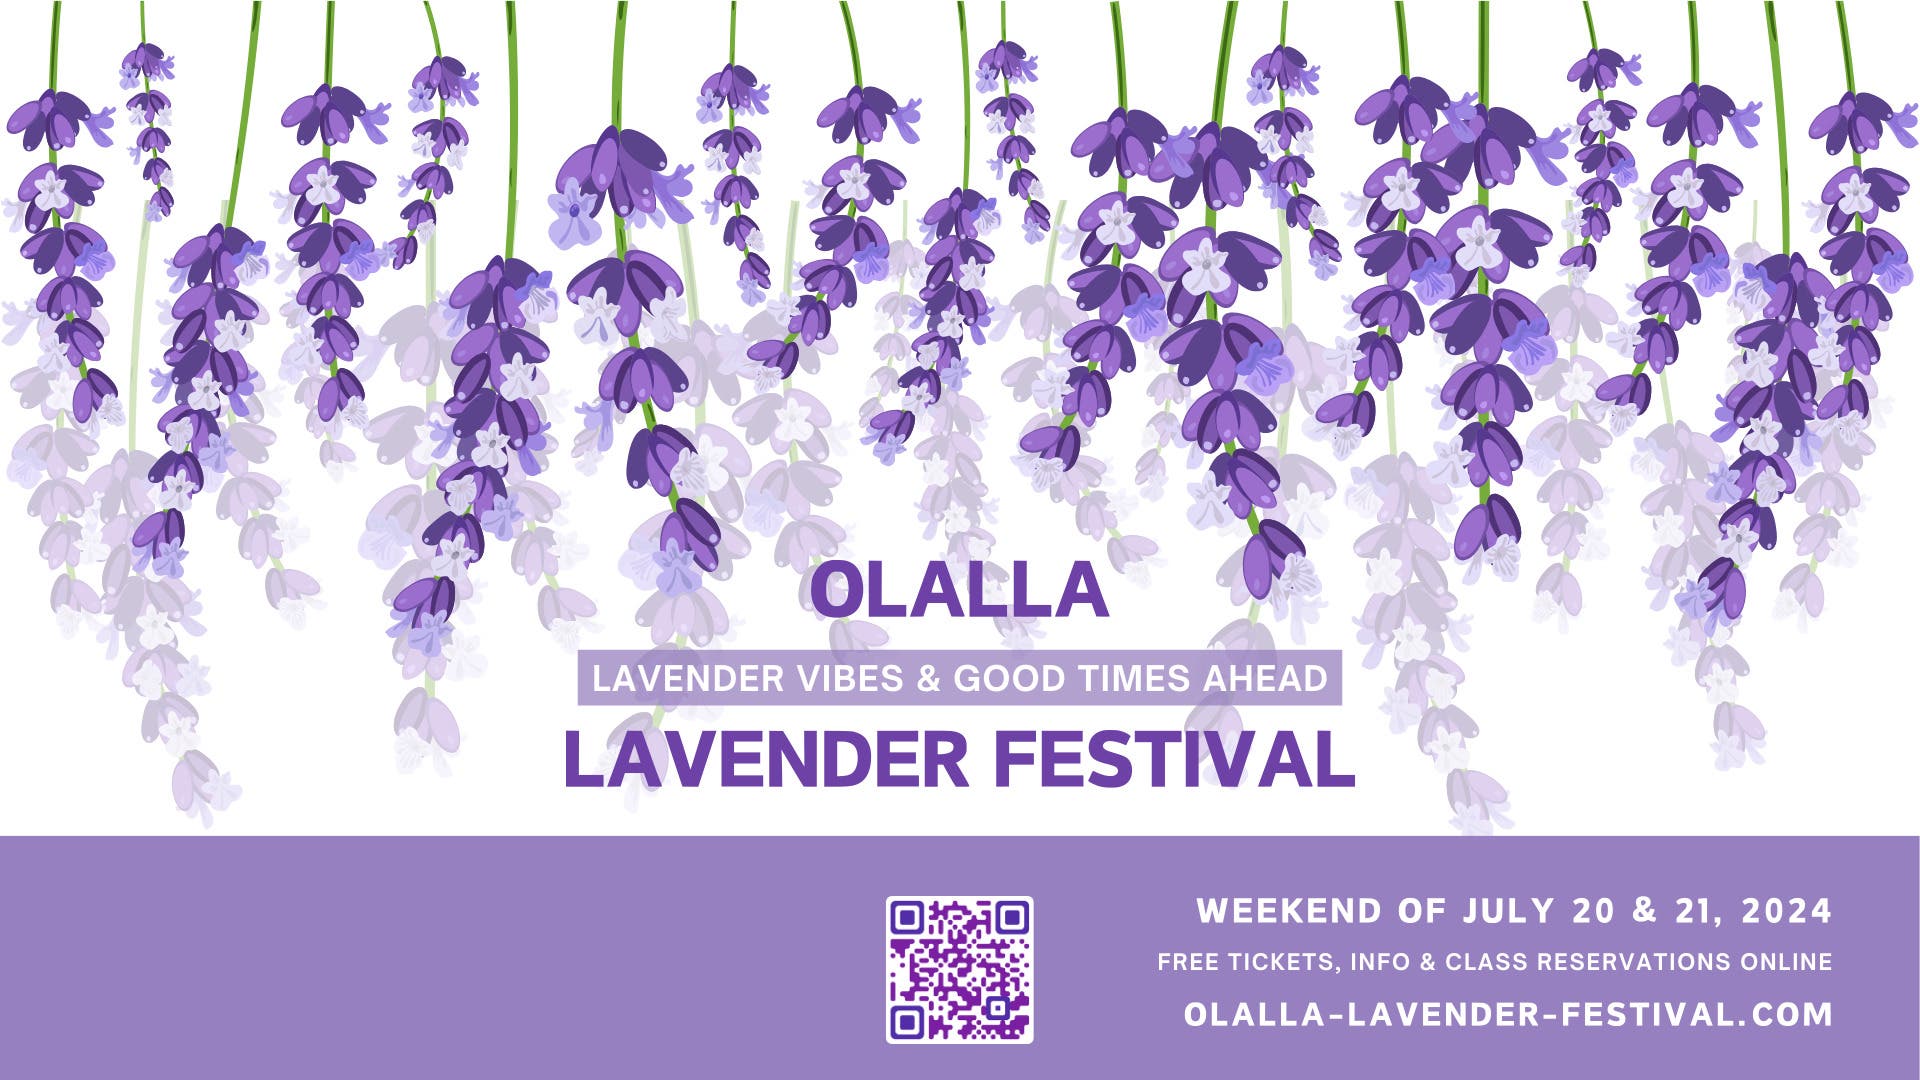 Olalla Lavender Festival